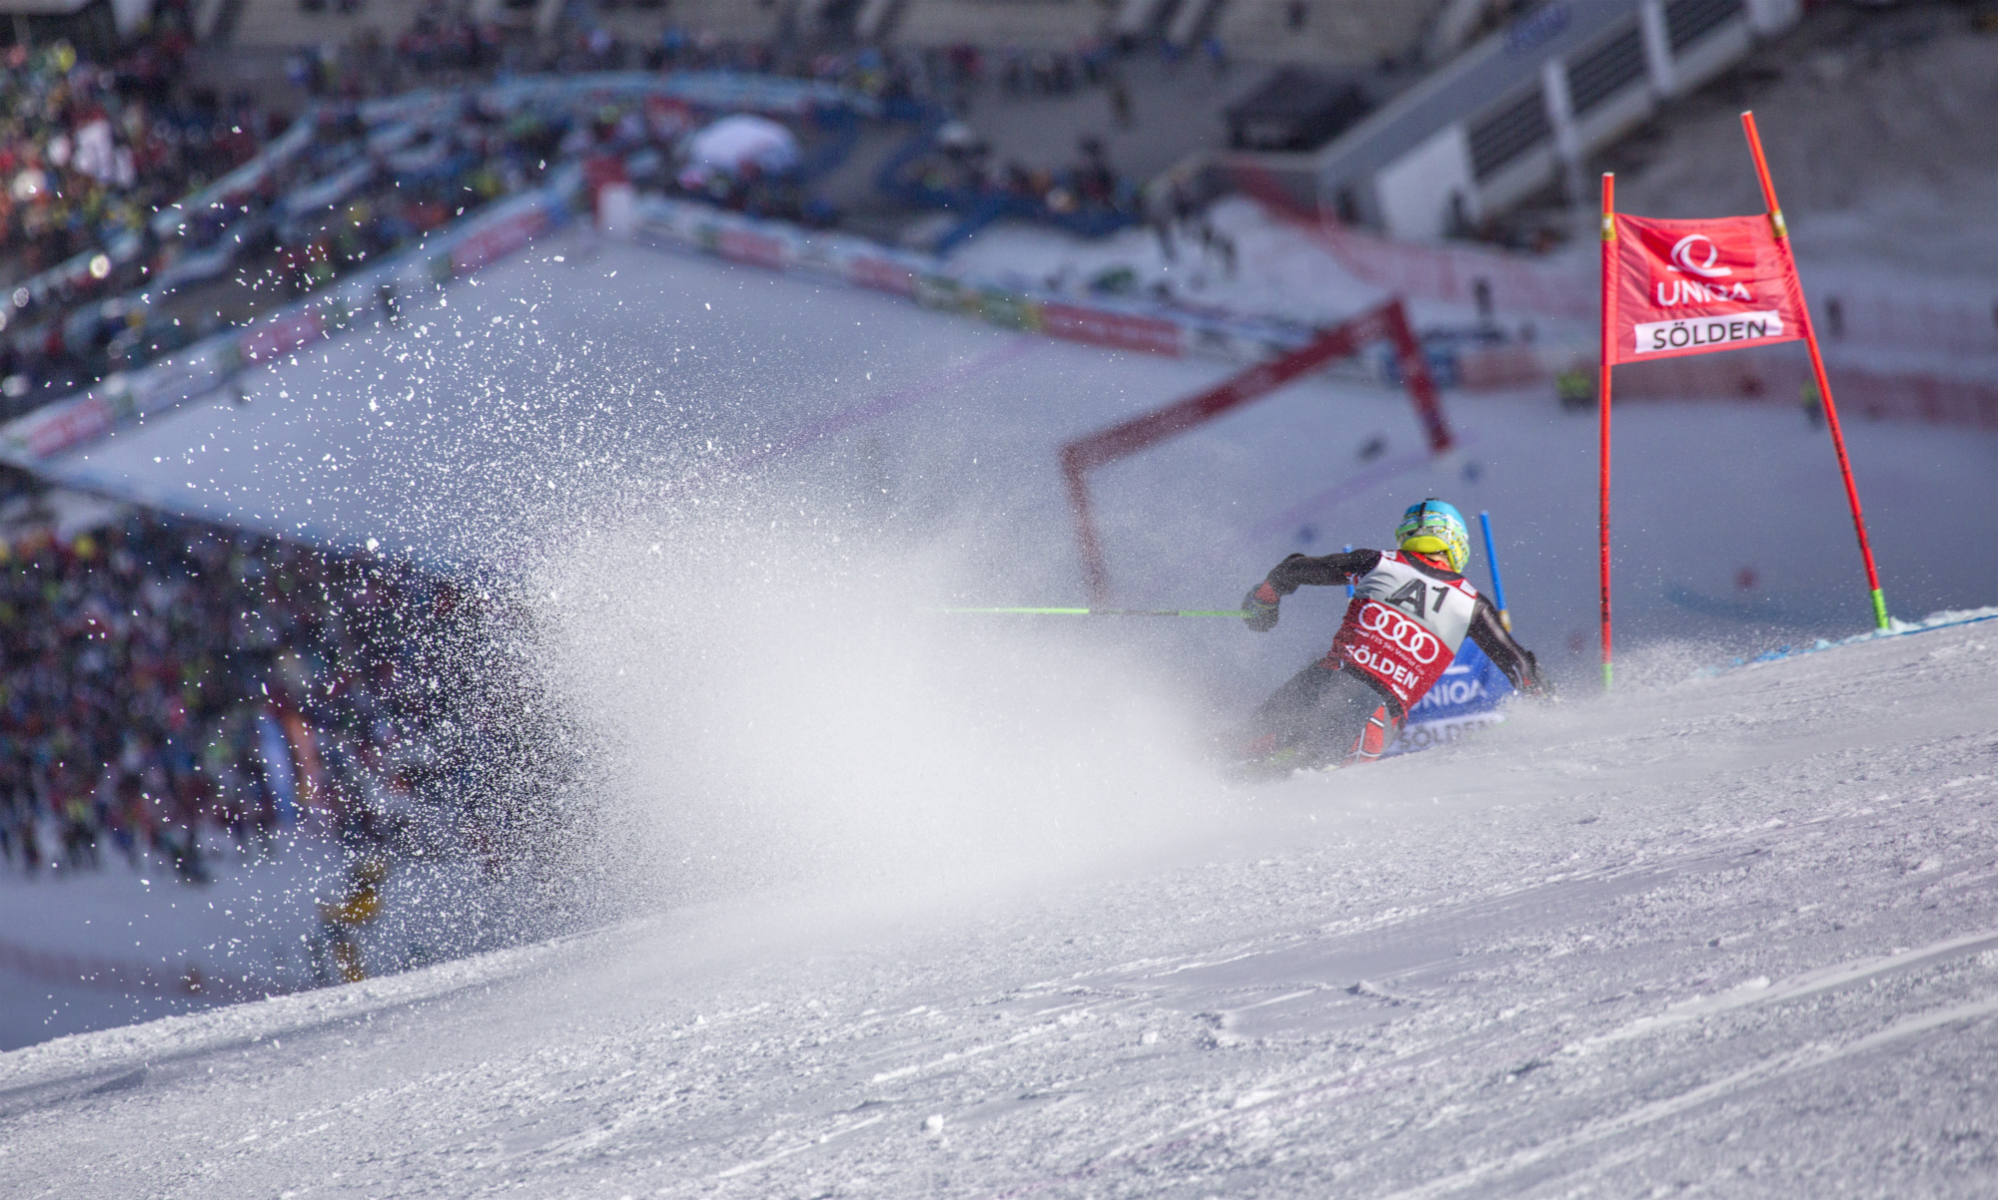 Un skieur en train de descendre une piste slalom.